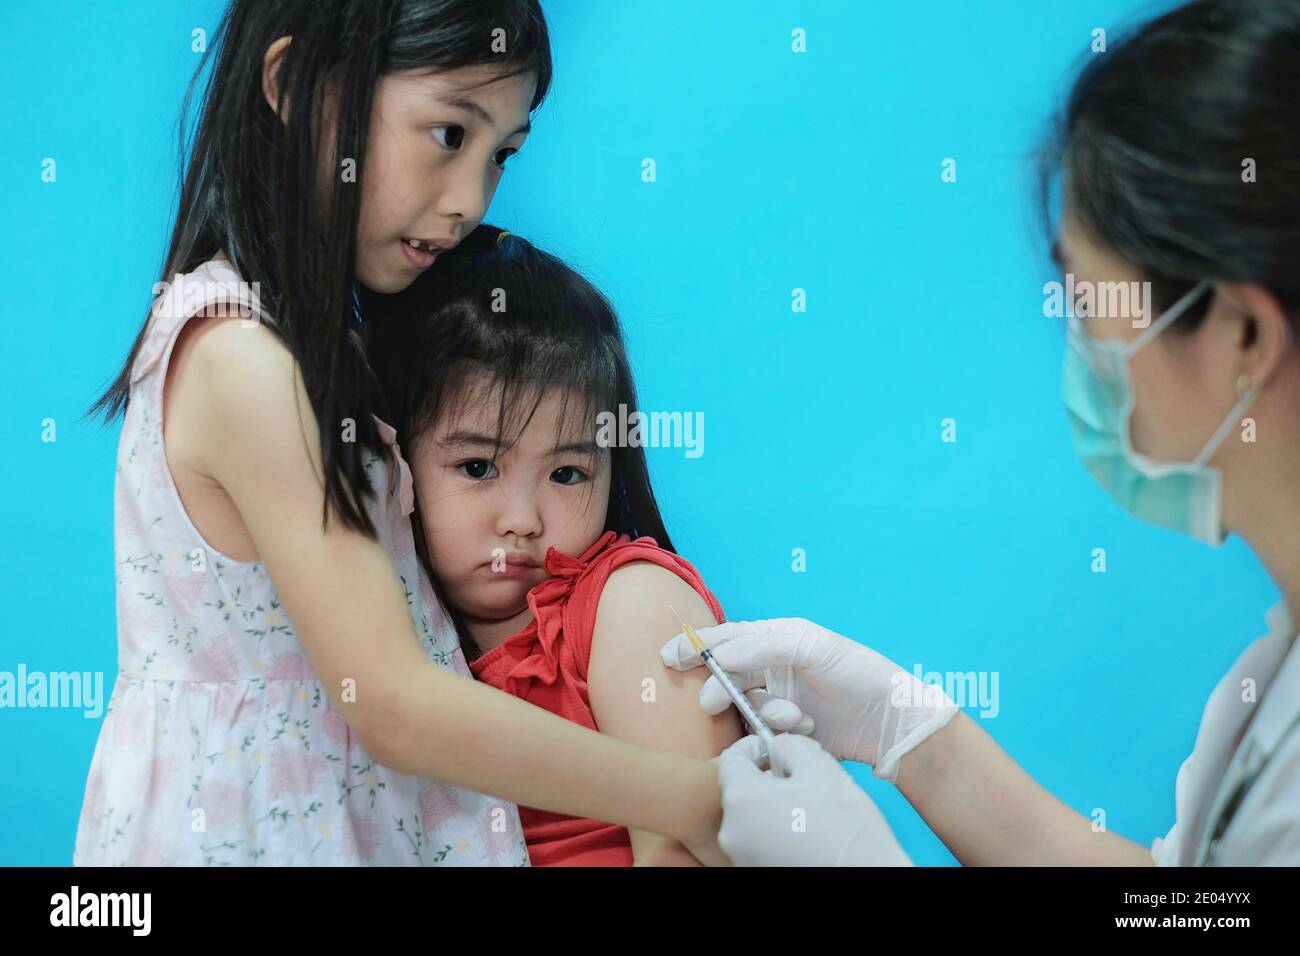 Une jolie jeune fille asiatique se sentant effrayée et nerveuse avant se faire vacciner par son médecin qui porte une chirurgie masque avec des gants en caoutchouc blanc est Banque D'Images